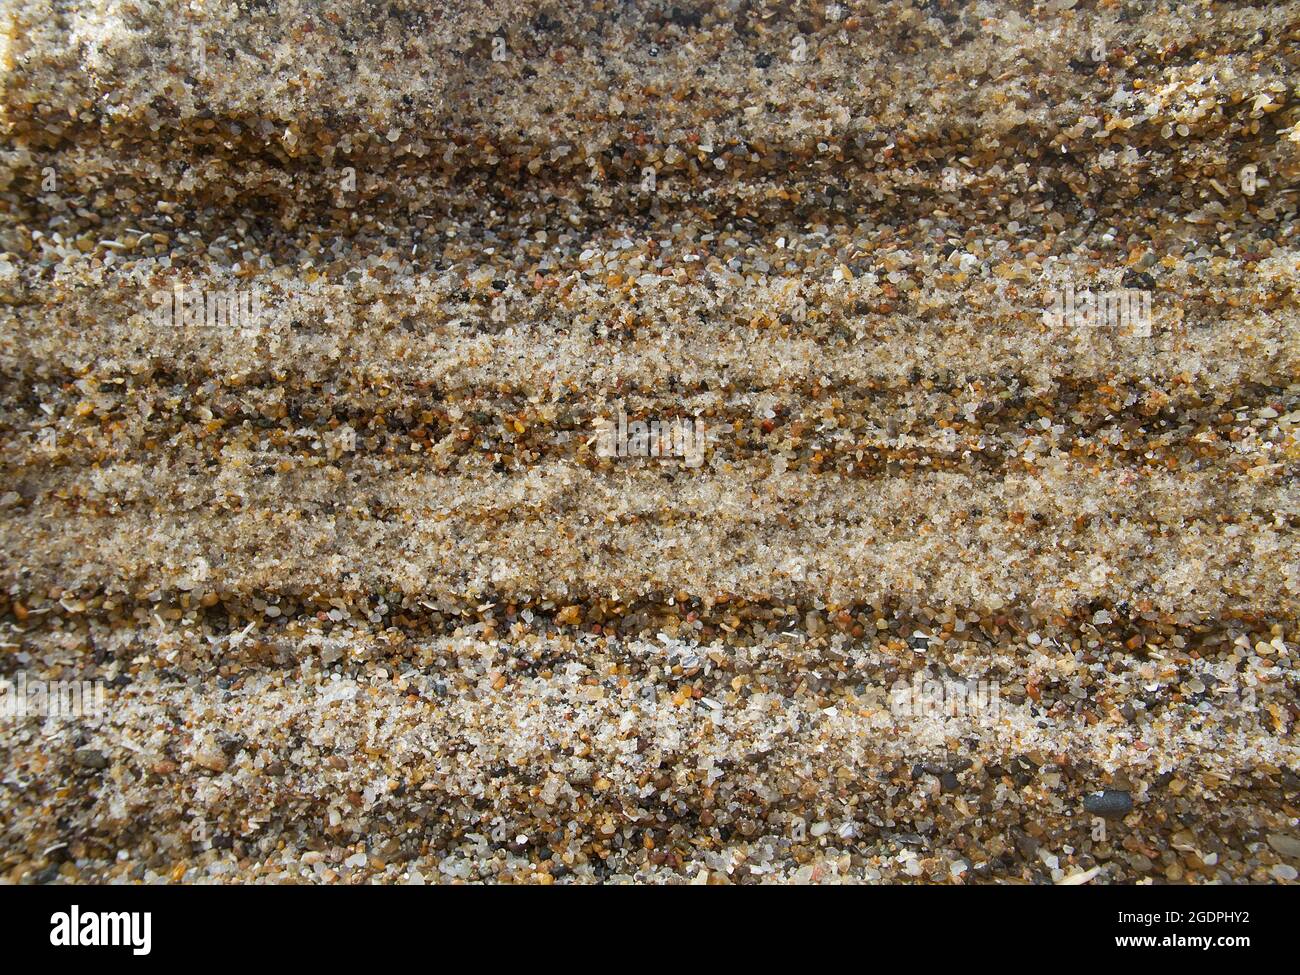 Wechsel von Schichten aus grobem Sand und Kies in einem Sediment an der Küste Stockfoto